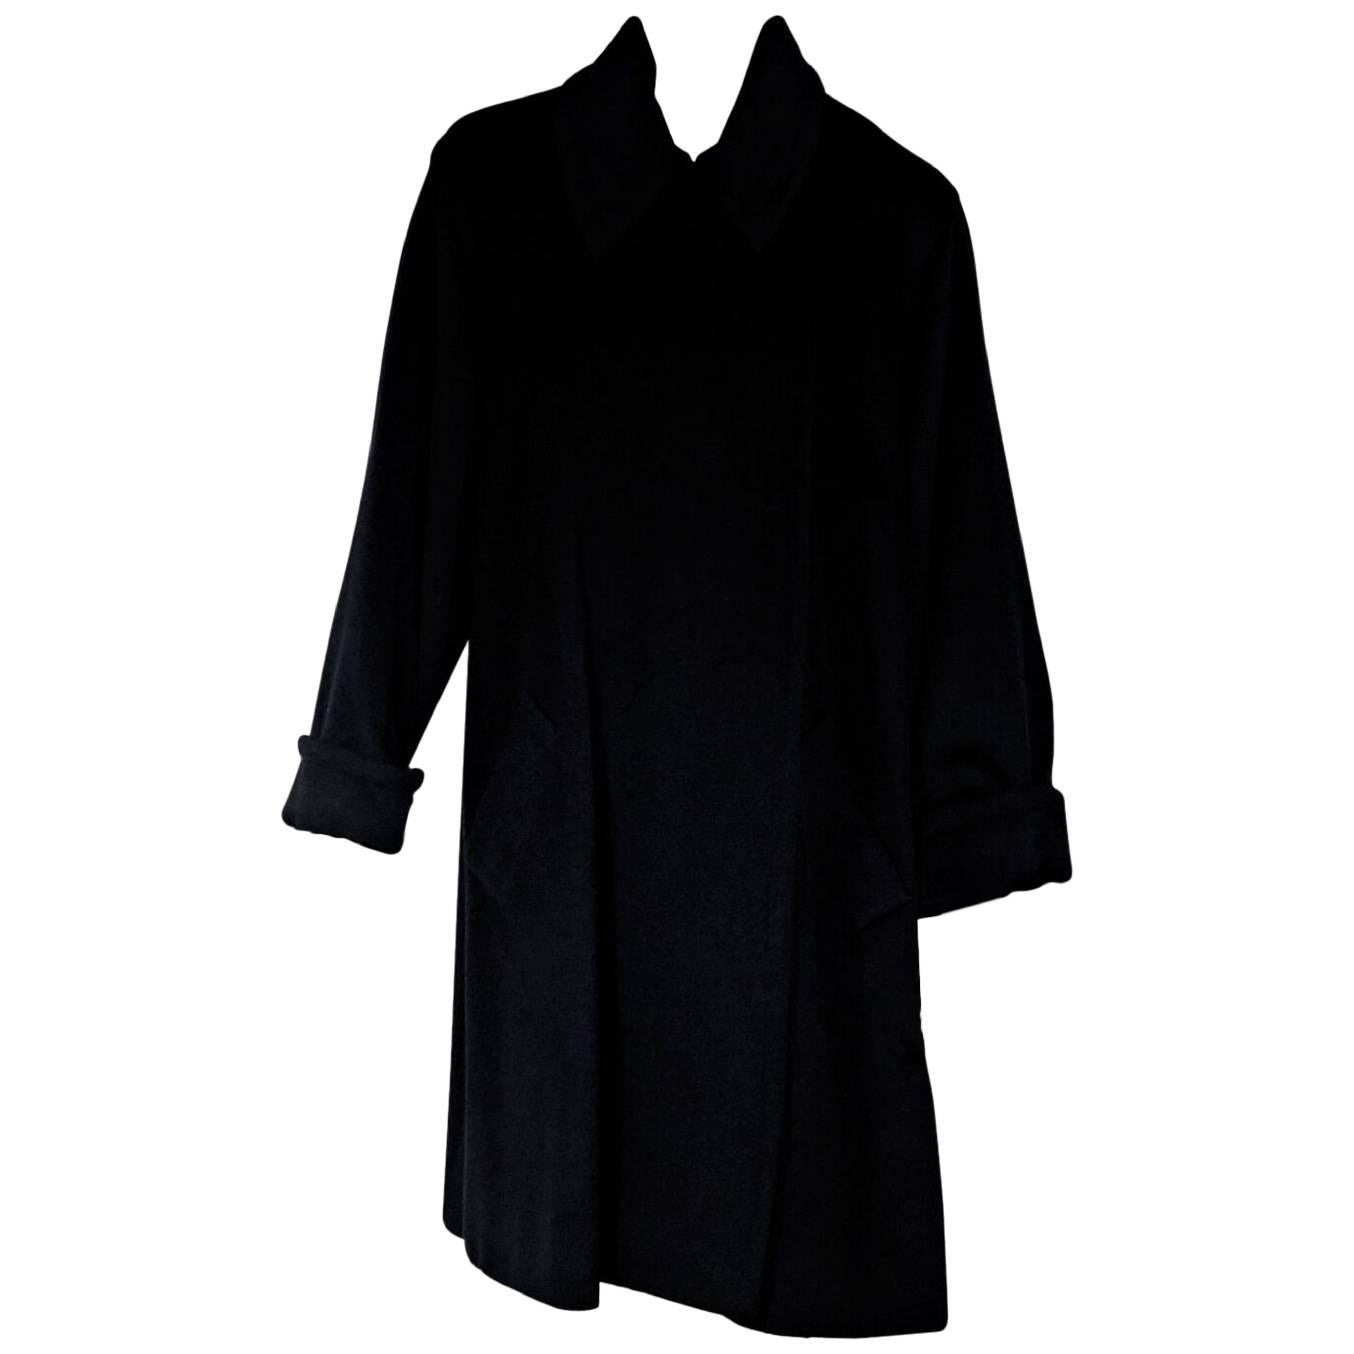 Celine Black Cashmere and Wool Blend Coat